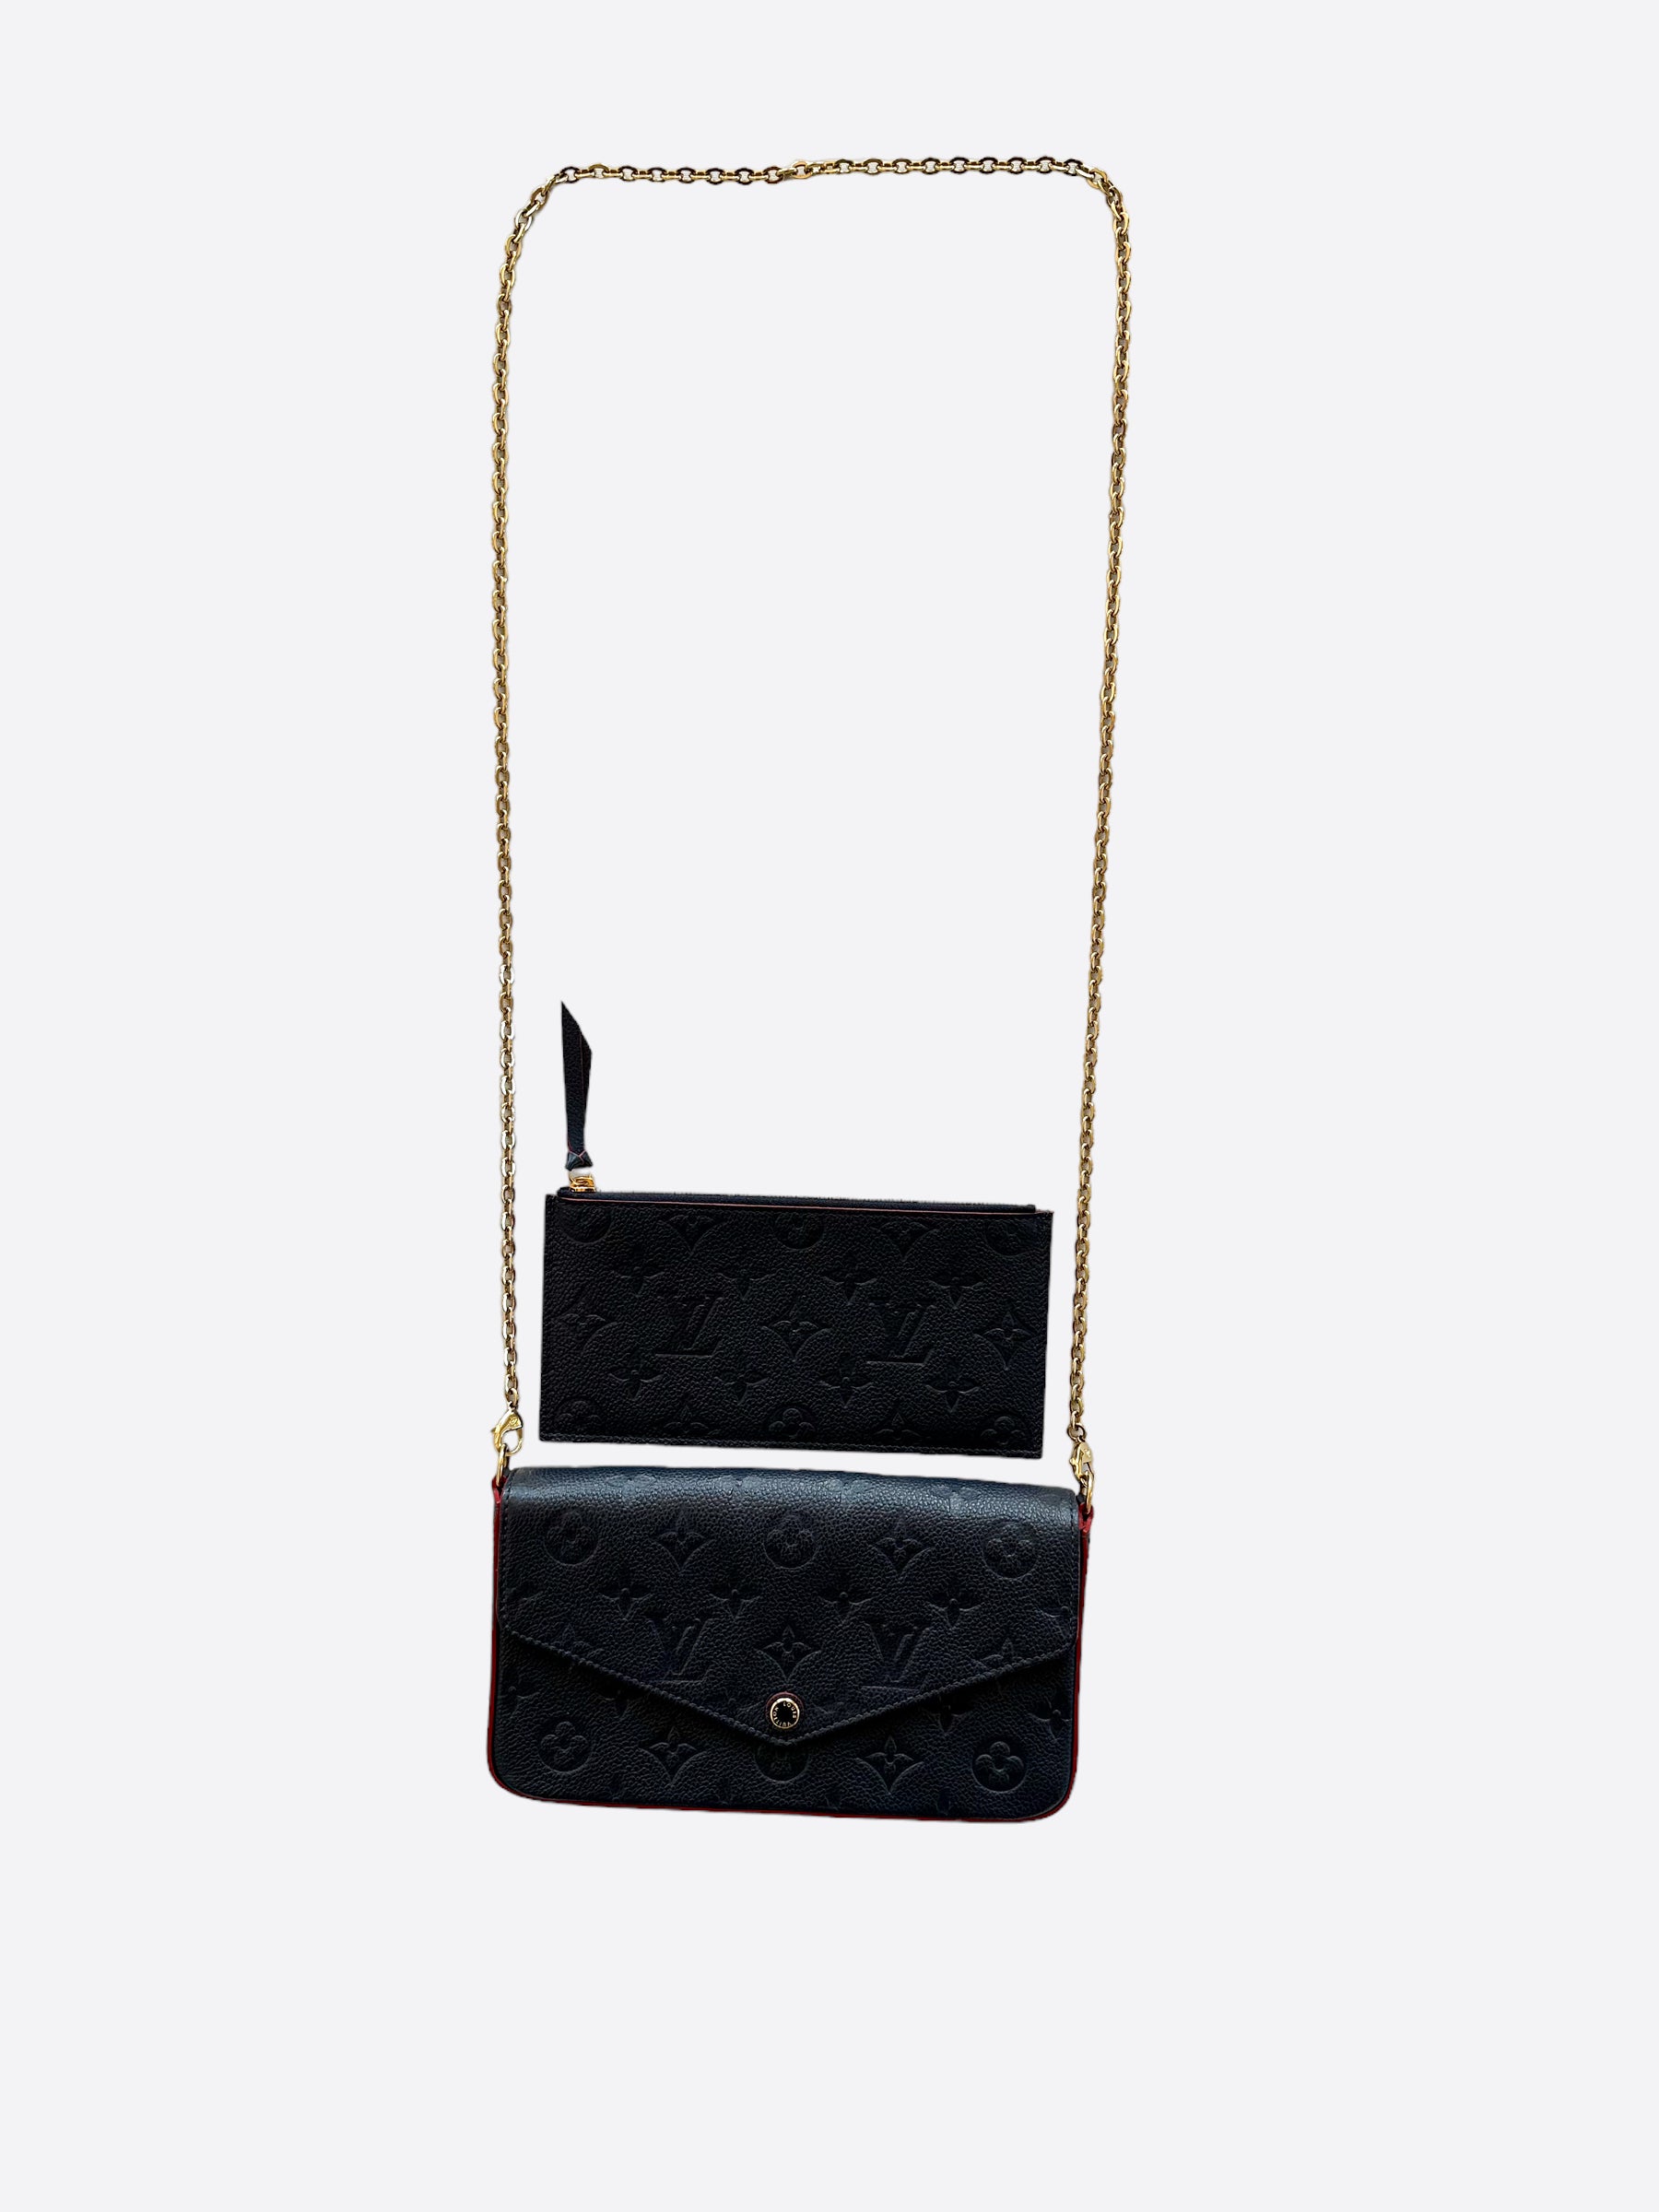 Louis Vuitton Pochette Accessories Mini Rosebud in Empreinte